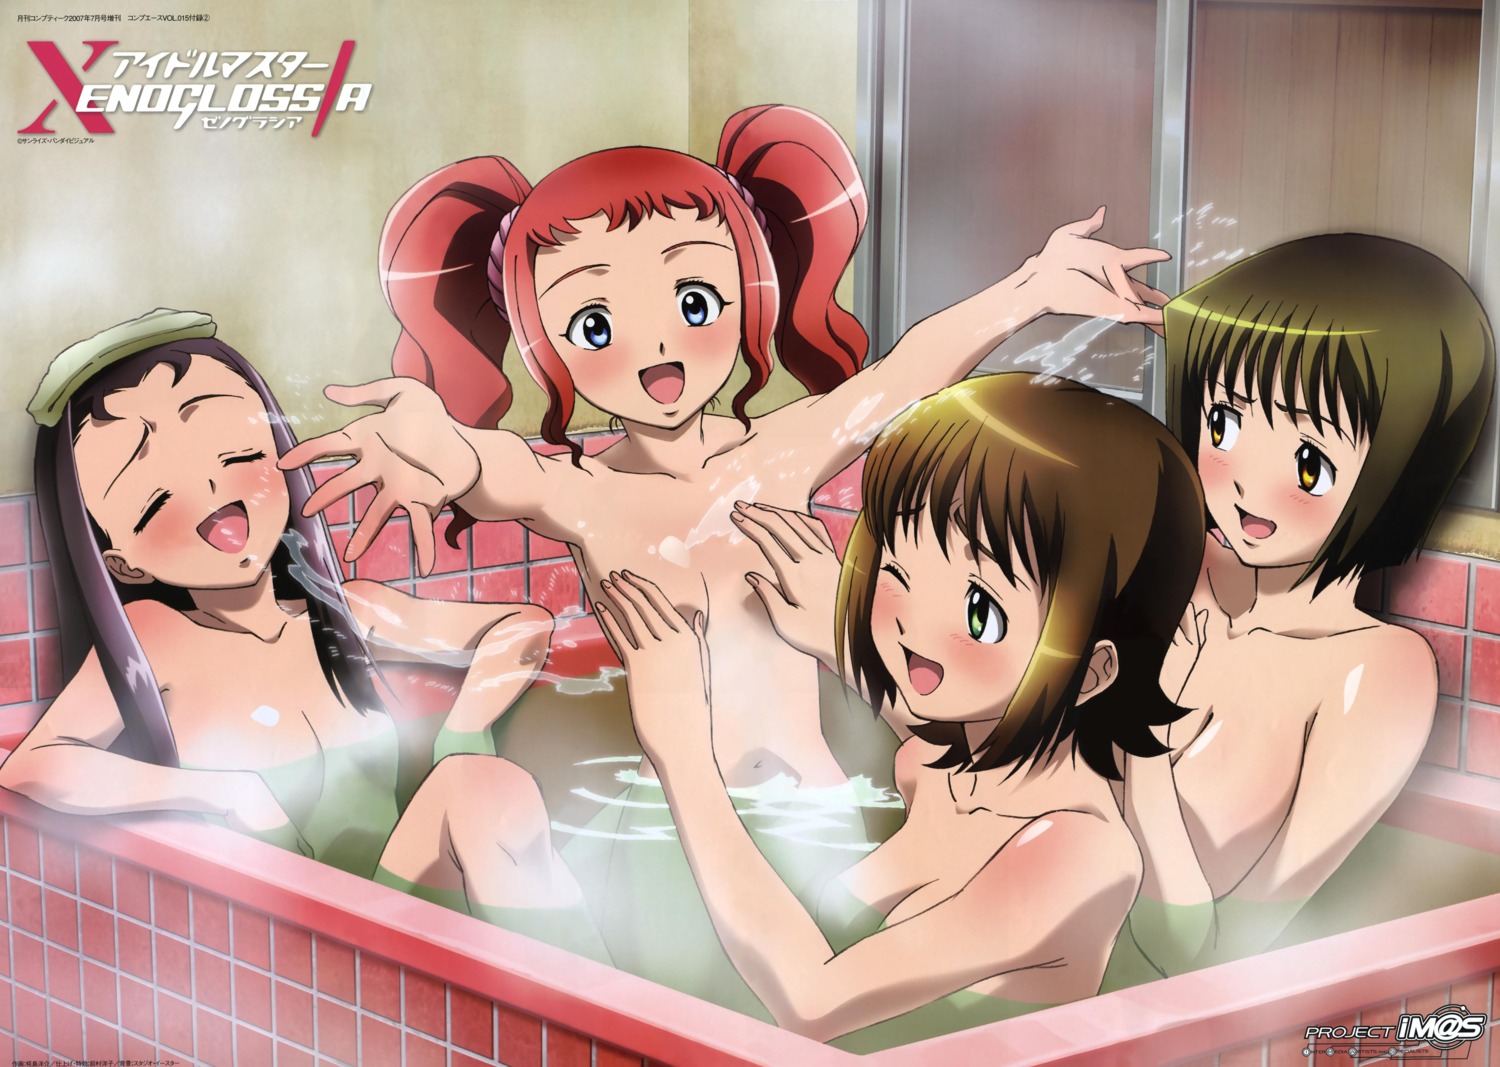 amami_haruka bathing hagiwara_yukiho kabashima_yousuke minase_iori naked takatsuki_yayoi the_idolm@ster wet xenoglossia